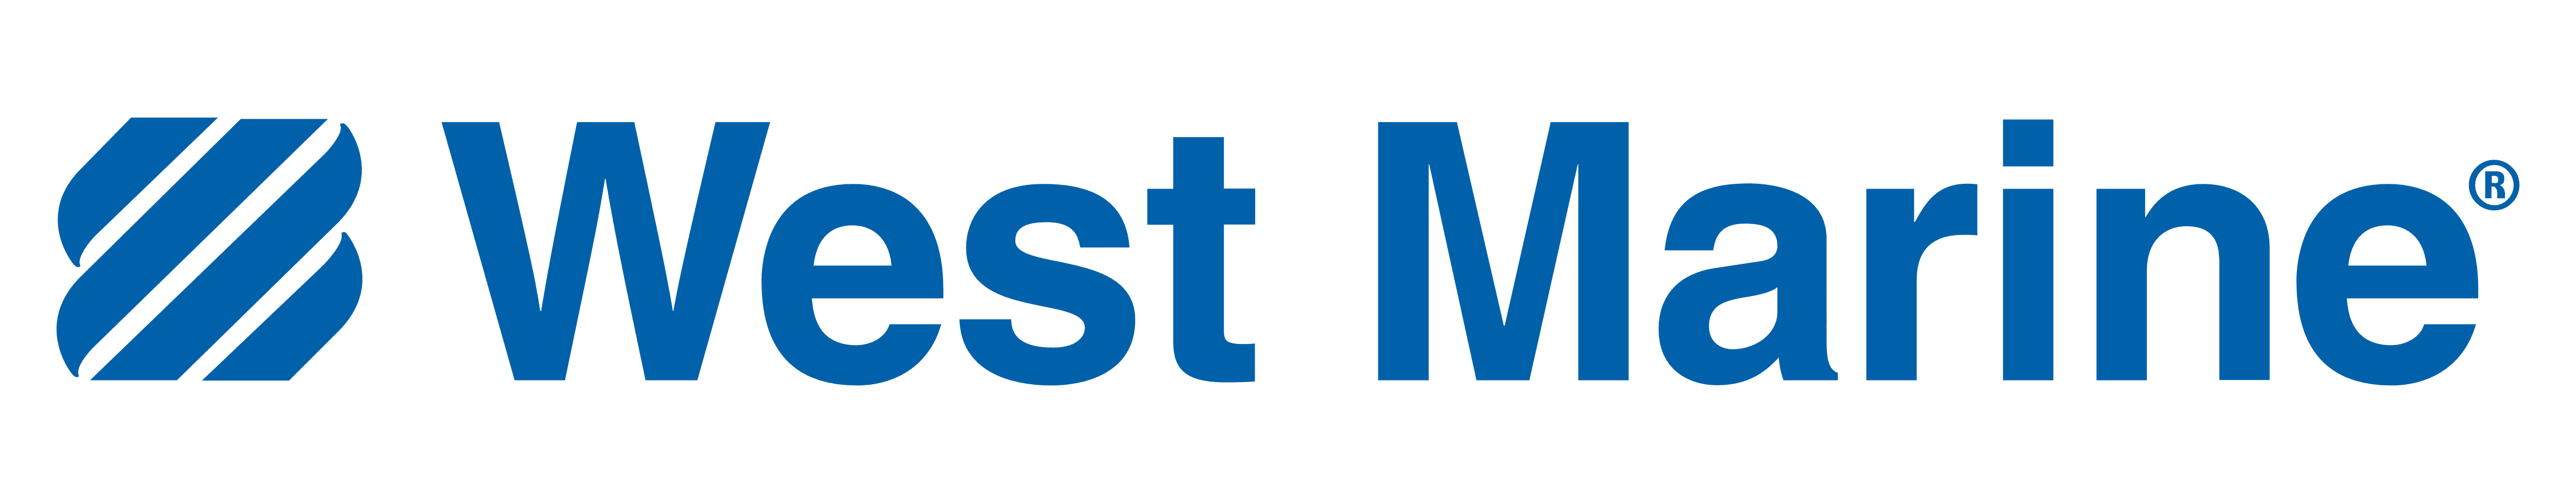 West Marine partner logo.